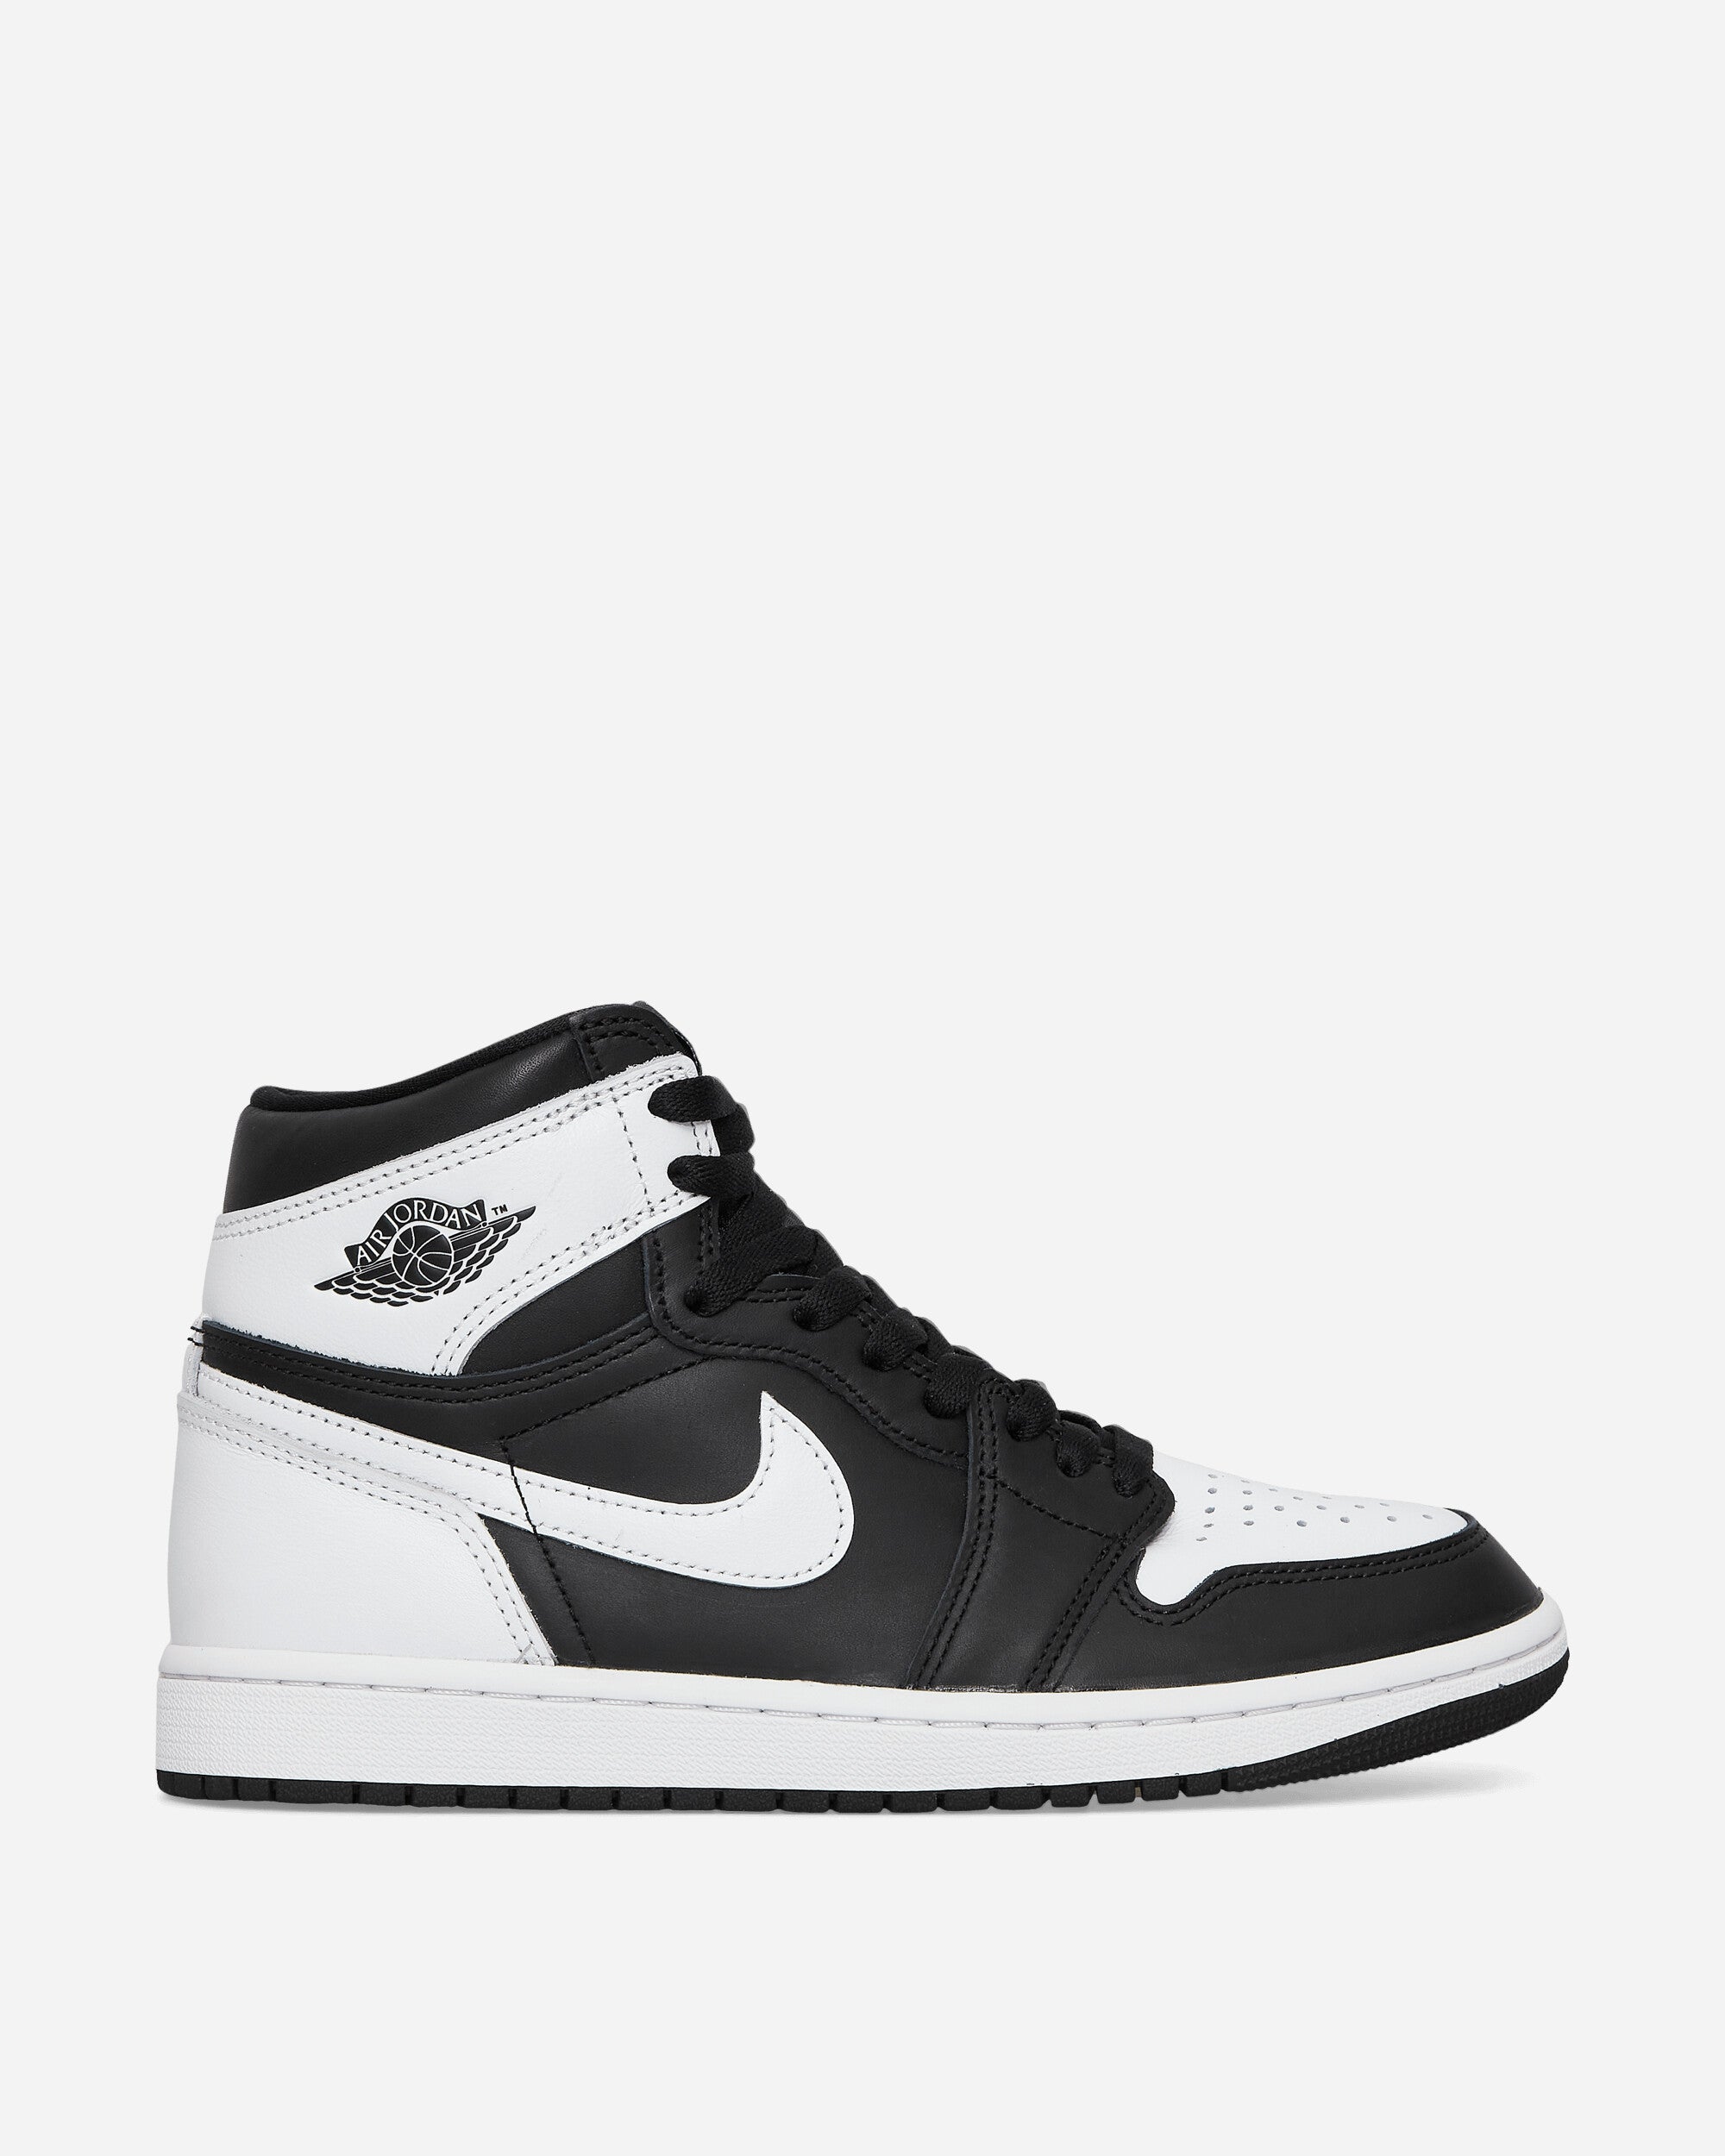 Air Jordan 1 Retro High Sneakers Black / White